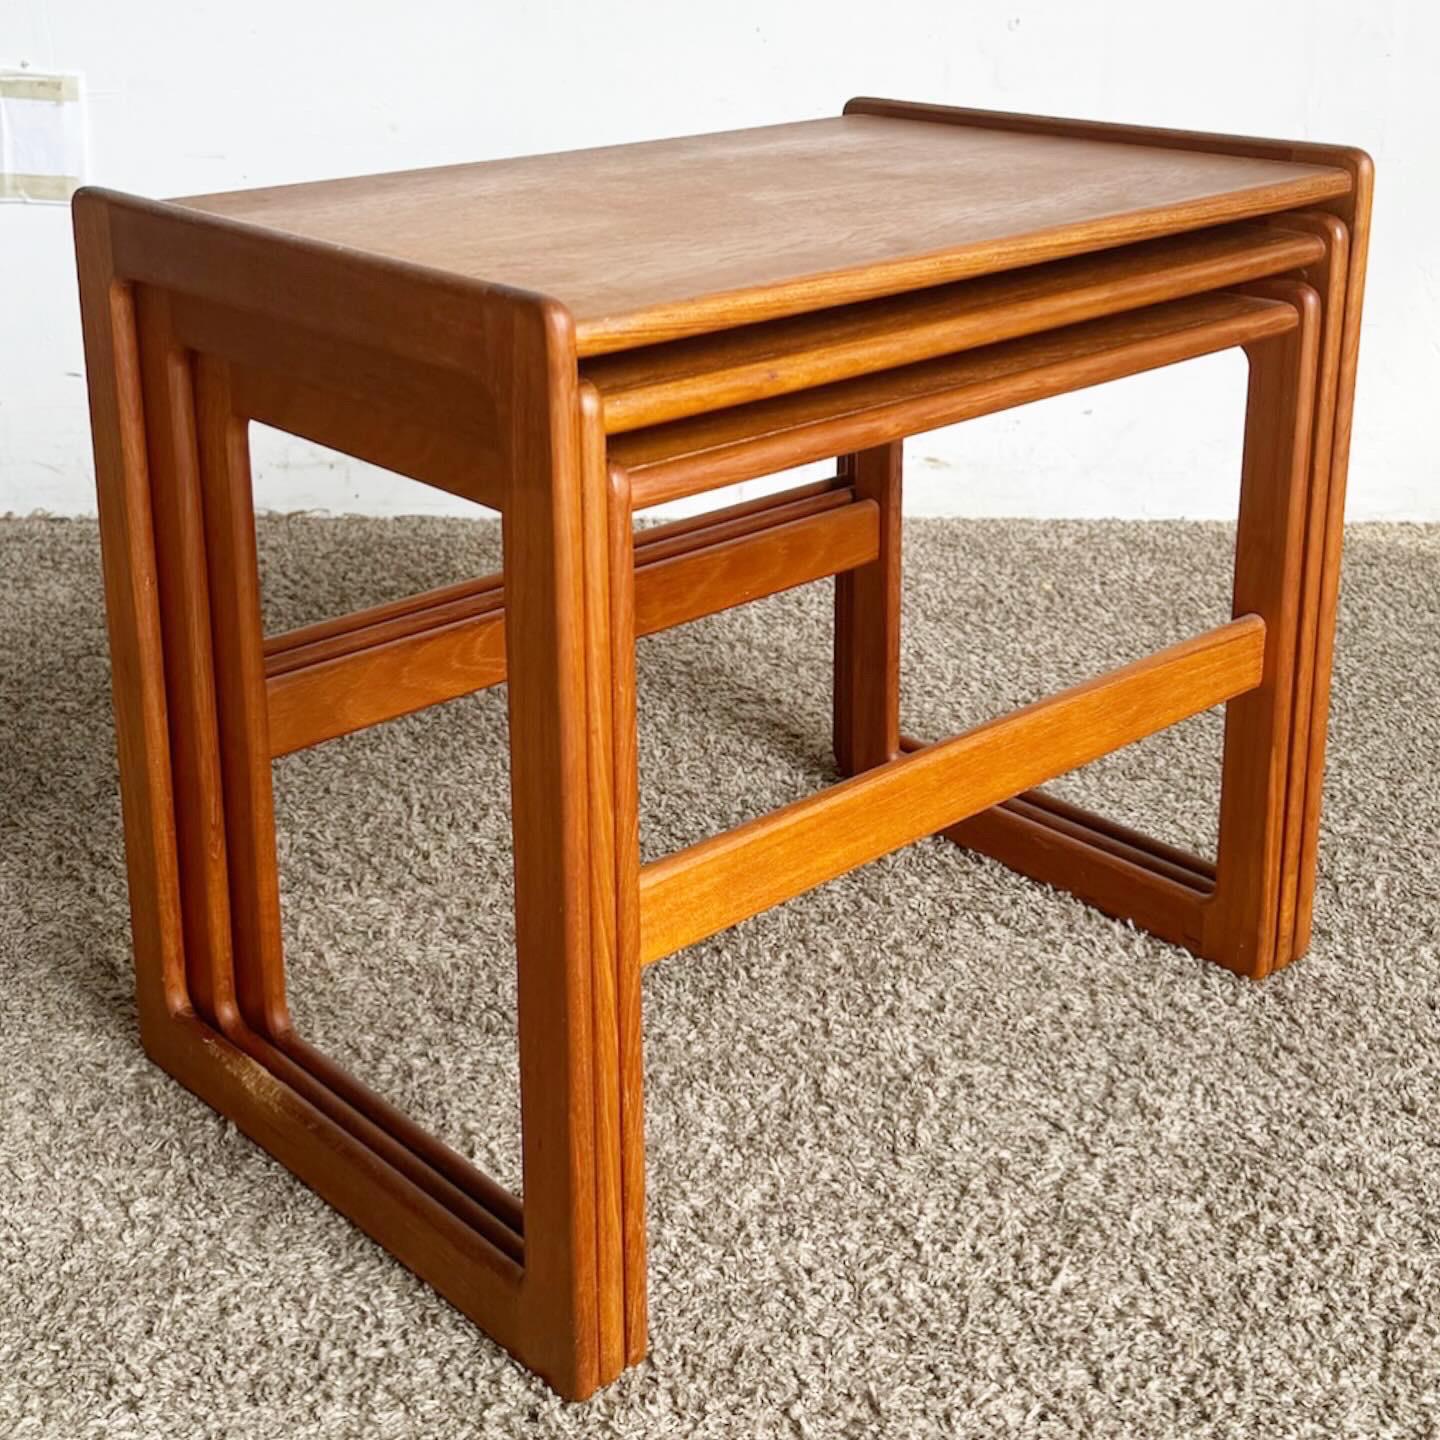 Die Mid Century Modern Teak Nesting Tables, ein Set aus drei Tischen, bieten stilvolle Vielseitigkeit im klassischen Mid-Century-Design. Sie sind aus hochwertigem Teakholz gefertigt und weisen eine natürliche Maserung auf, die jeden Raum mit